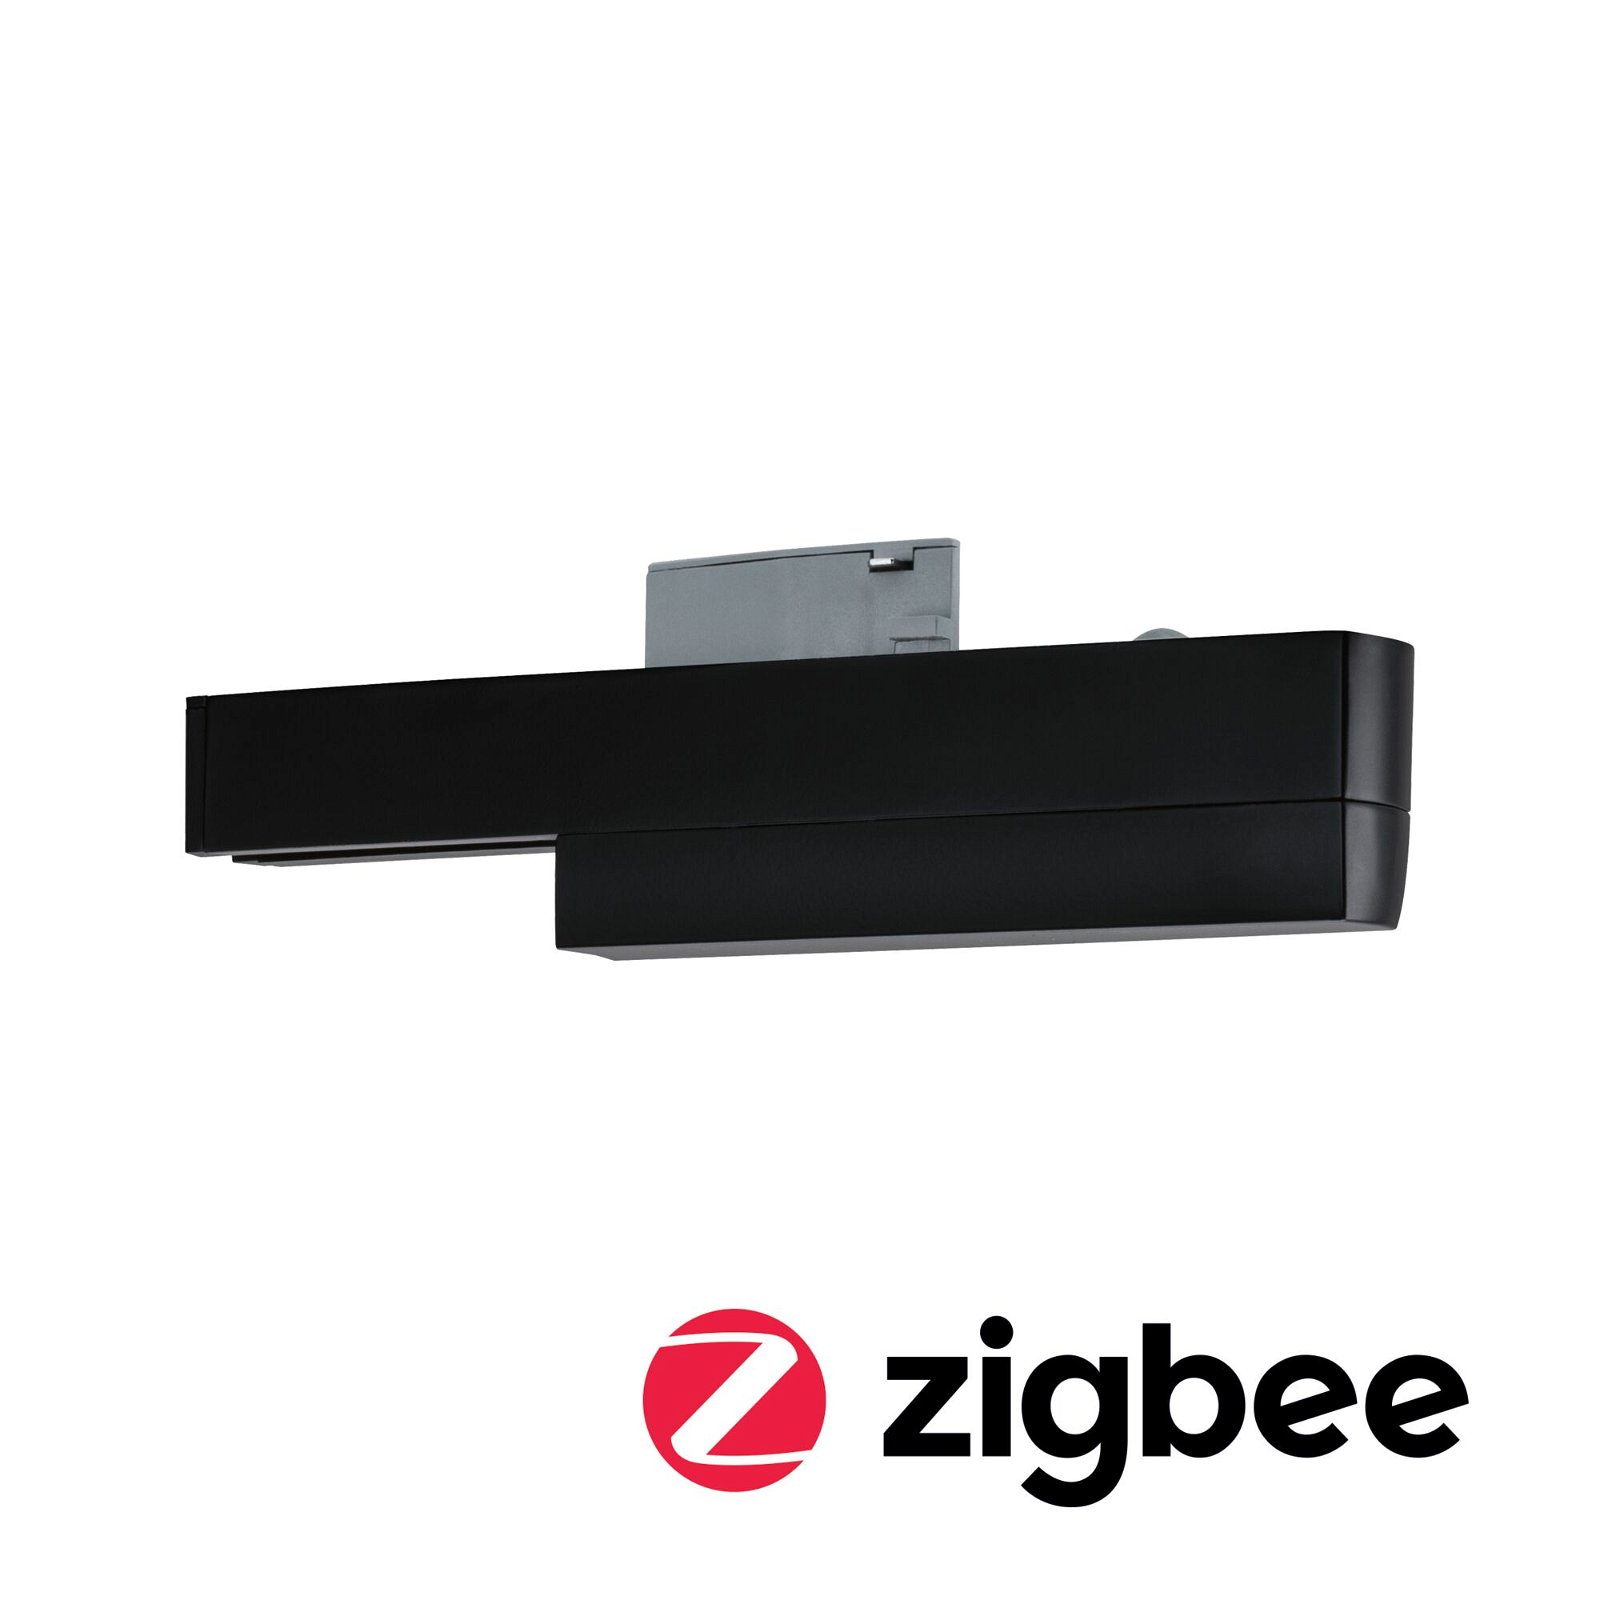 URail Railadapter Smart Home Zigbee On/Off/Dimm 166x20mm Zwart mat